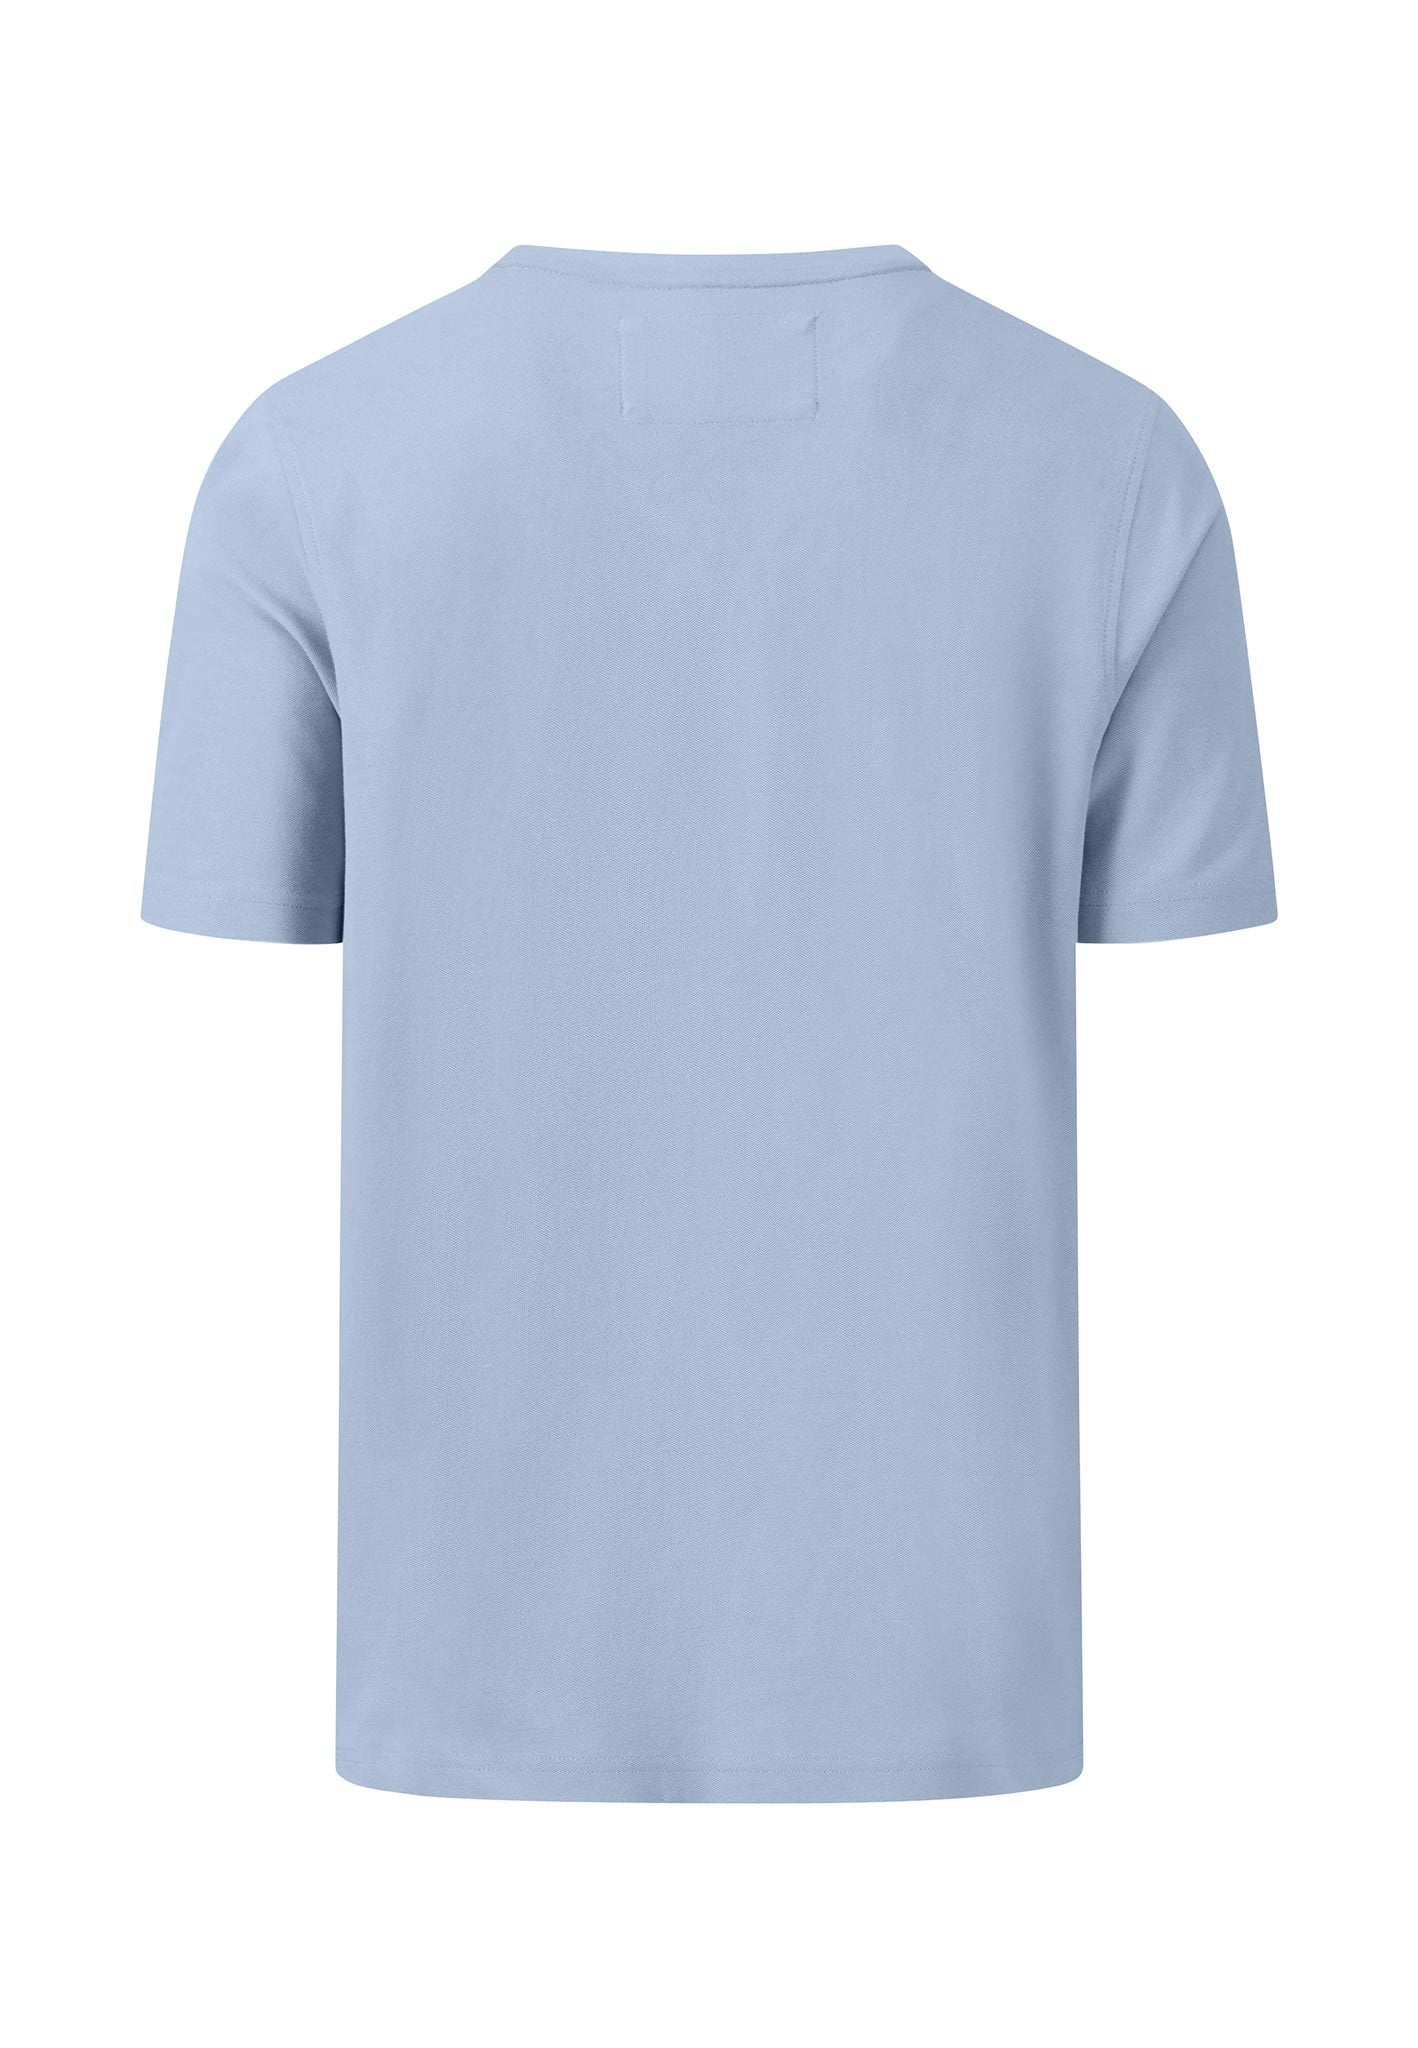 Cotton Pique T-Shirt - Summer Breeze